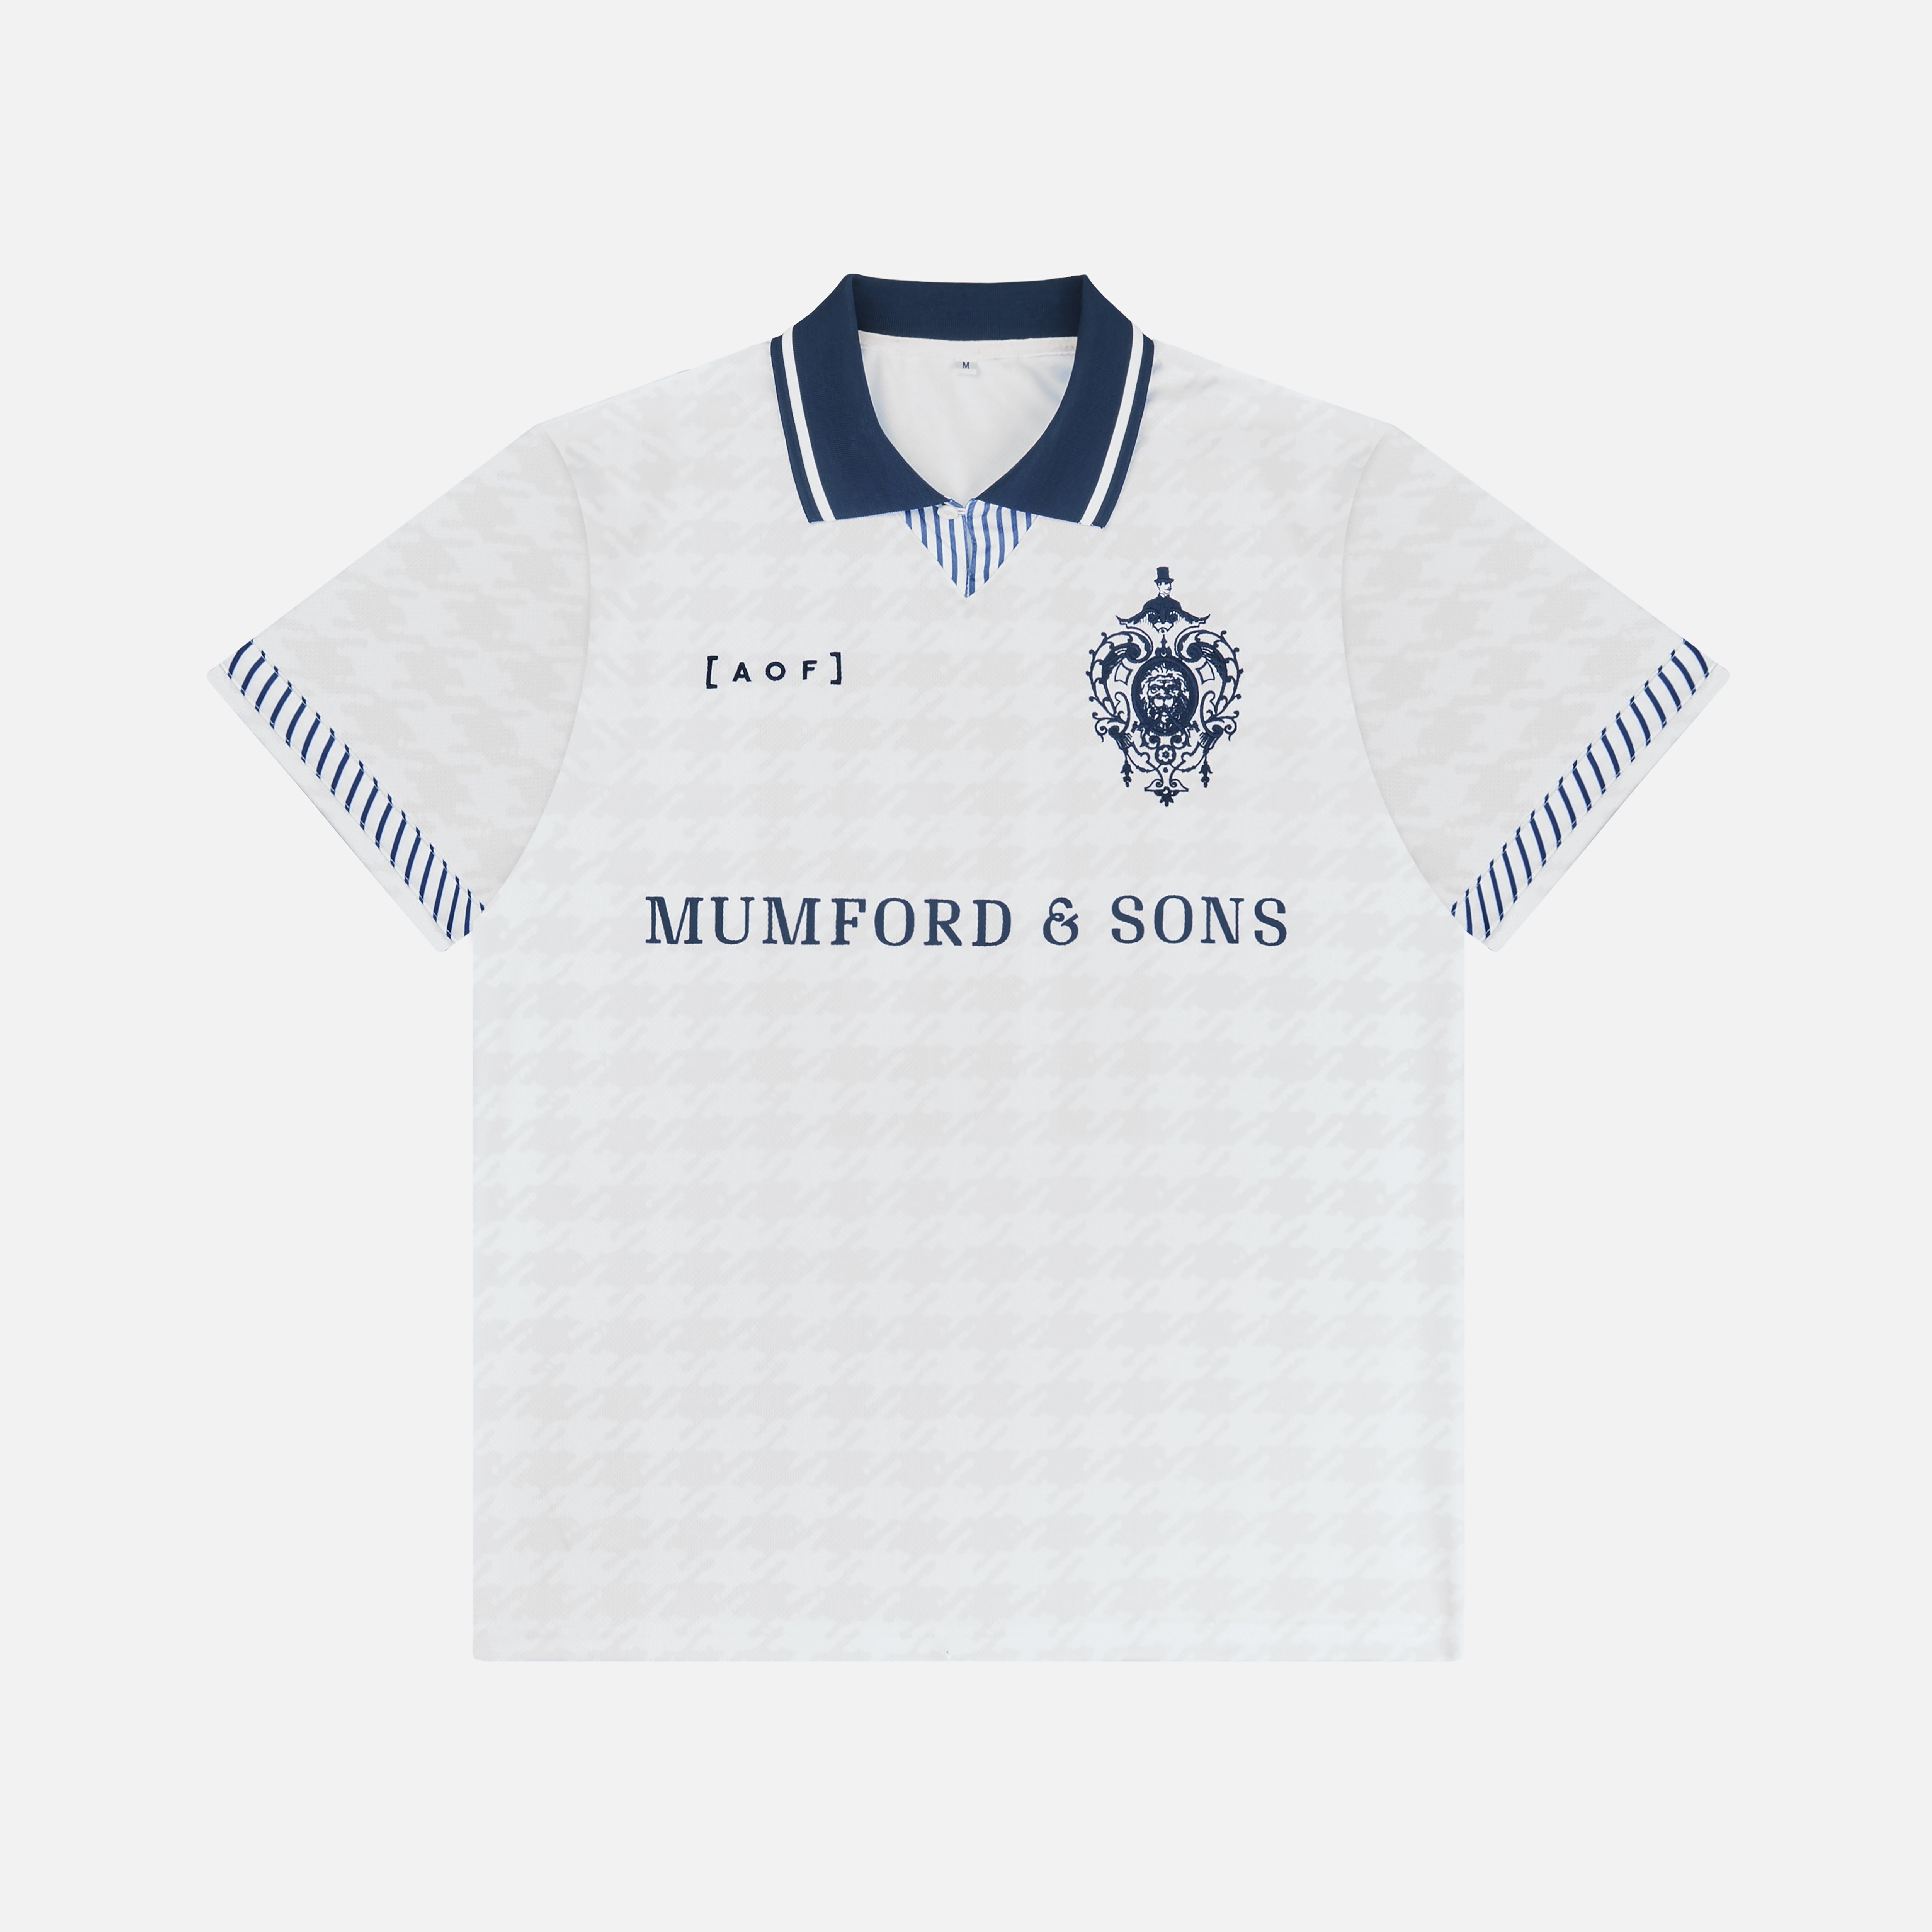 Mumford & Sons  - AOF x Mumford & Sons Football Shirt